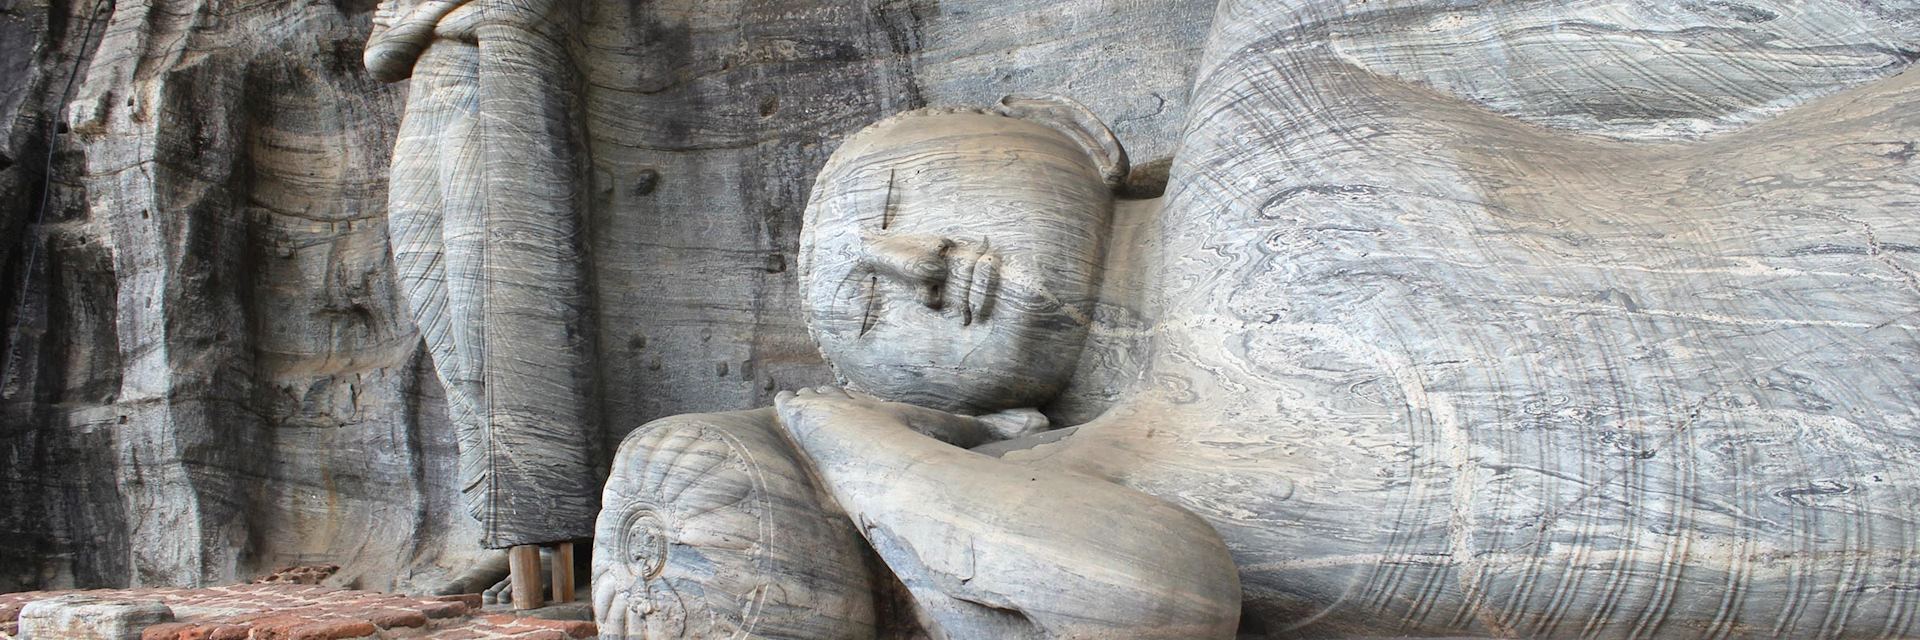 Polonnaruwa buddhas